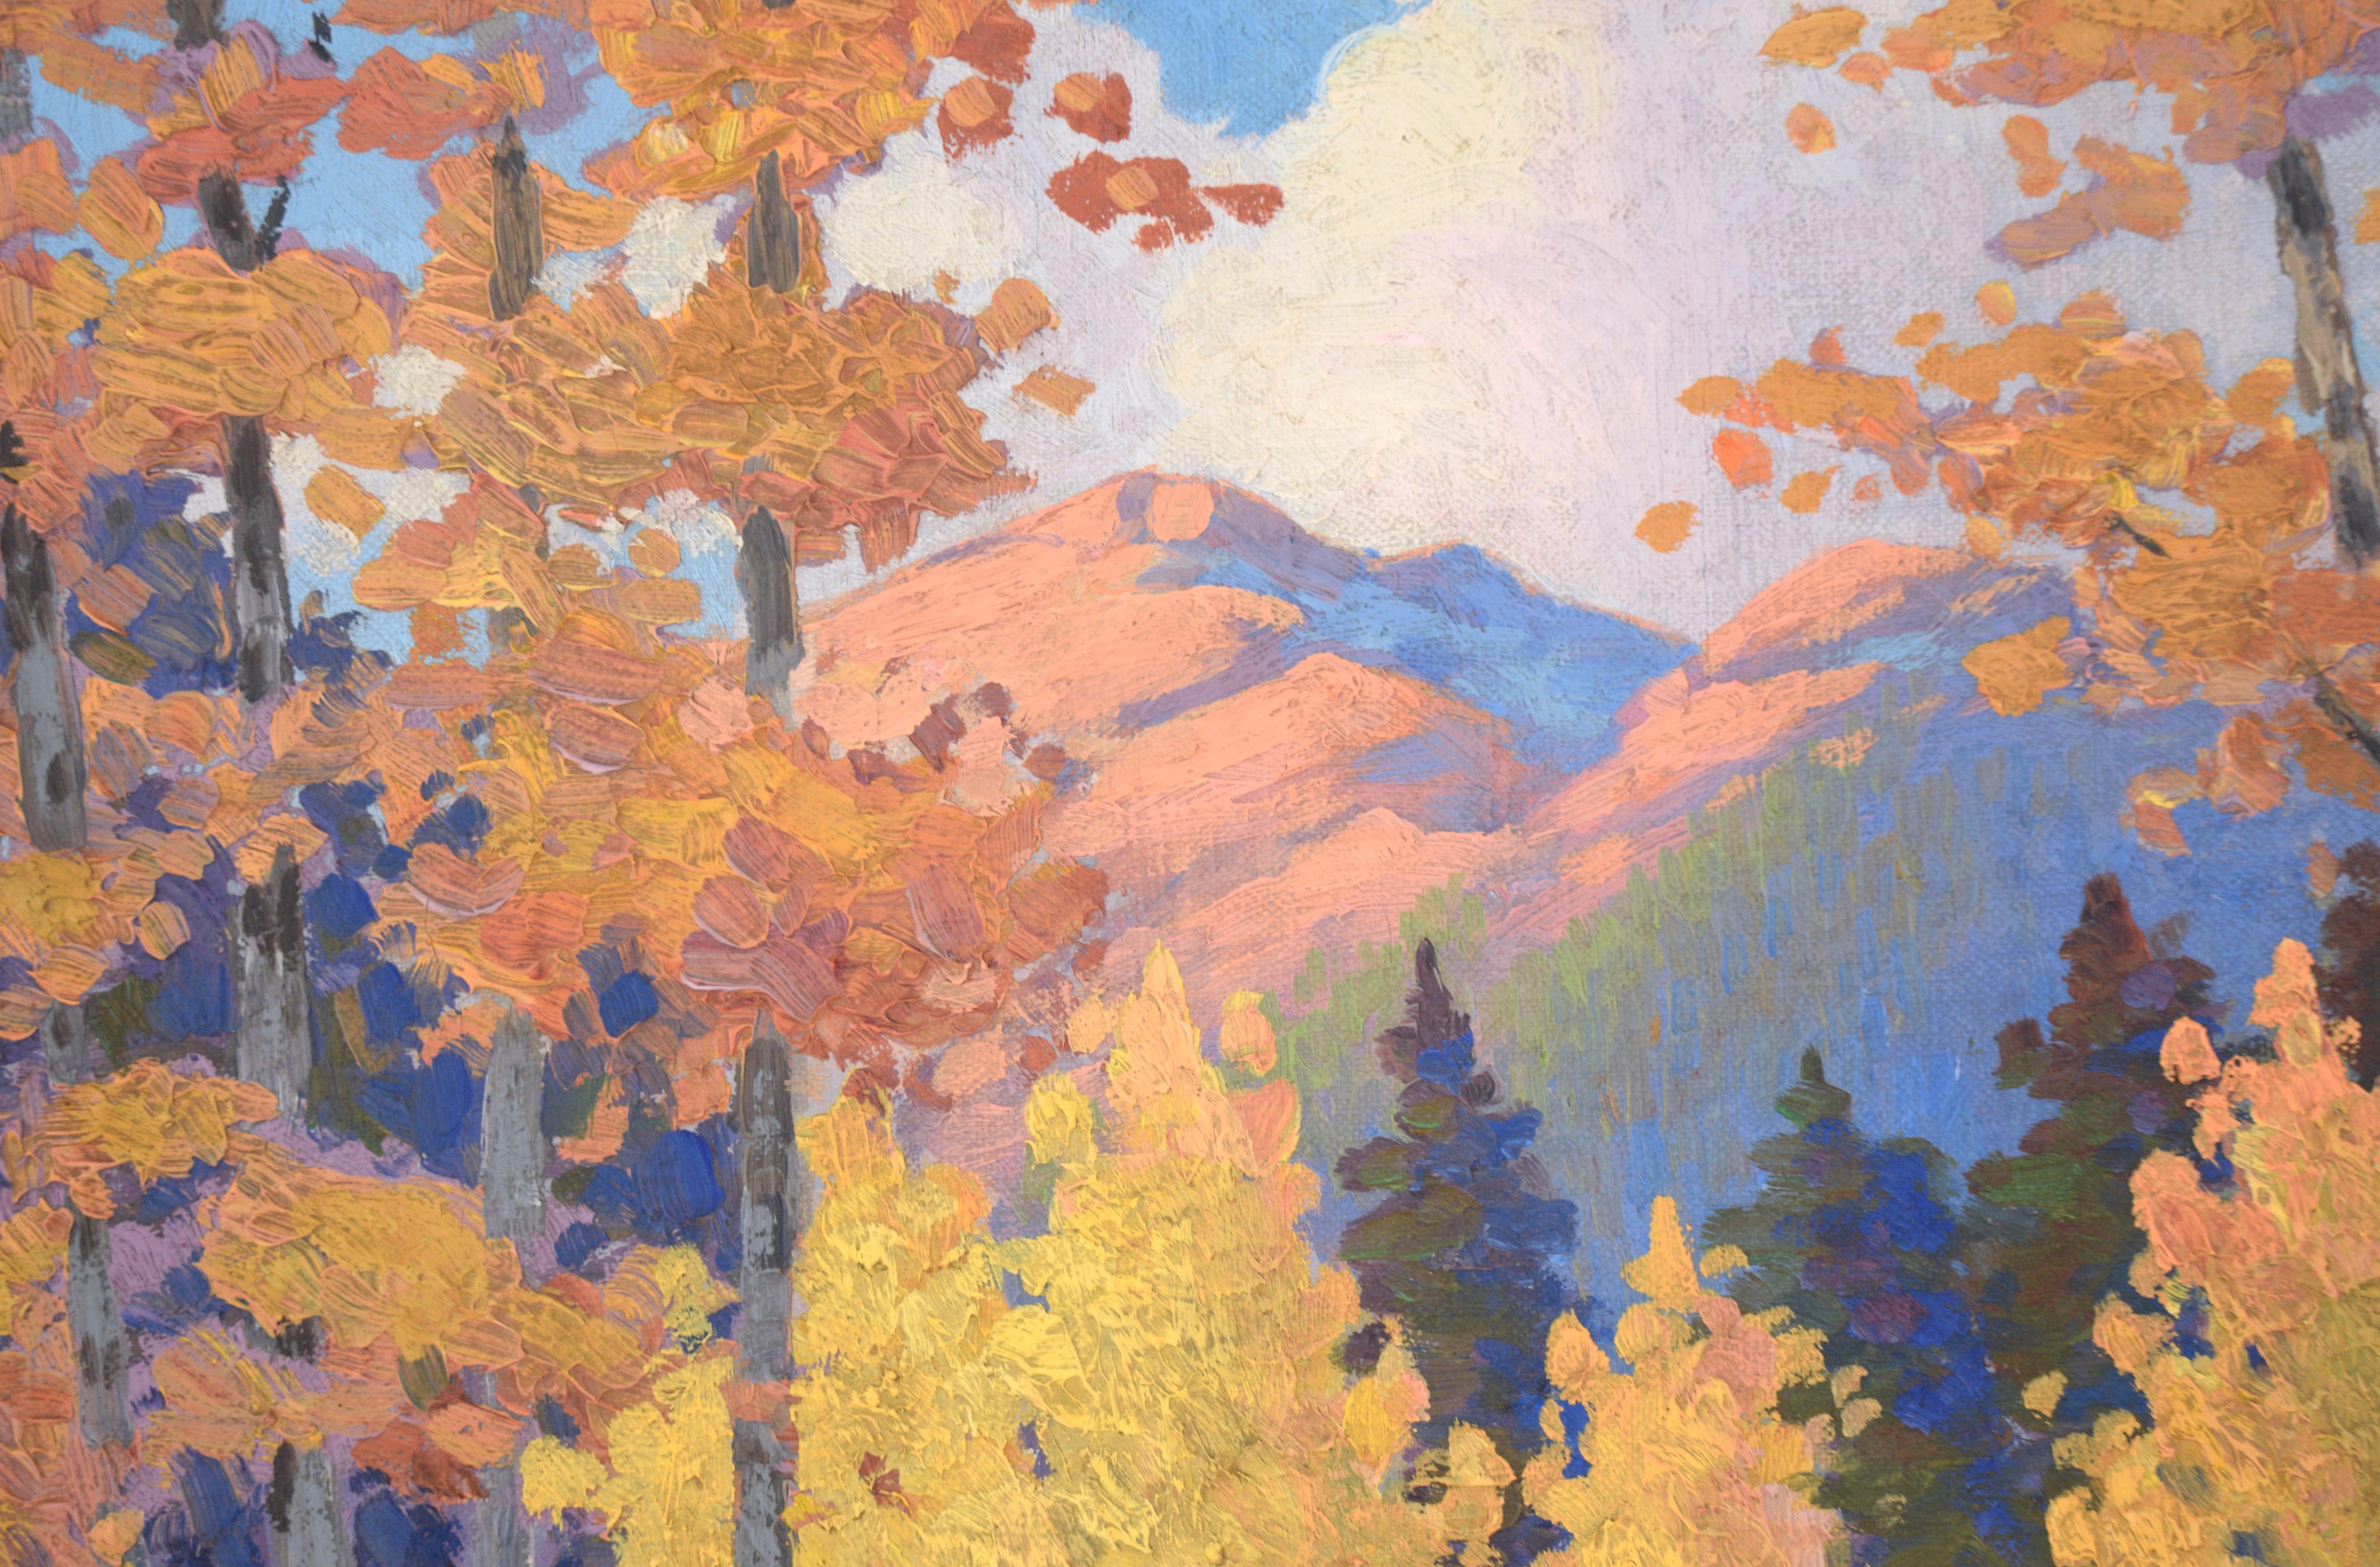 Feuilles tombées sur le chemin à Estes Park, Colorado - Paysage d'automne
Paysage vertical habile et vibrant de MC Brown. Un chemin serpente à travers une forêt de trembles, couverte de feuilles jaunes et orange. Les trembles encadrent les deux